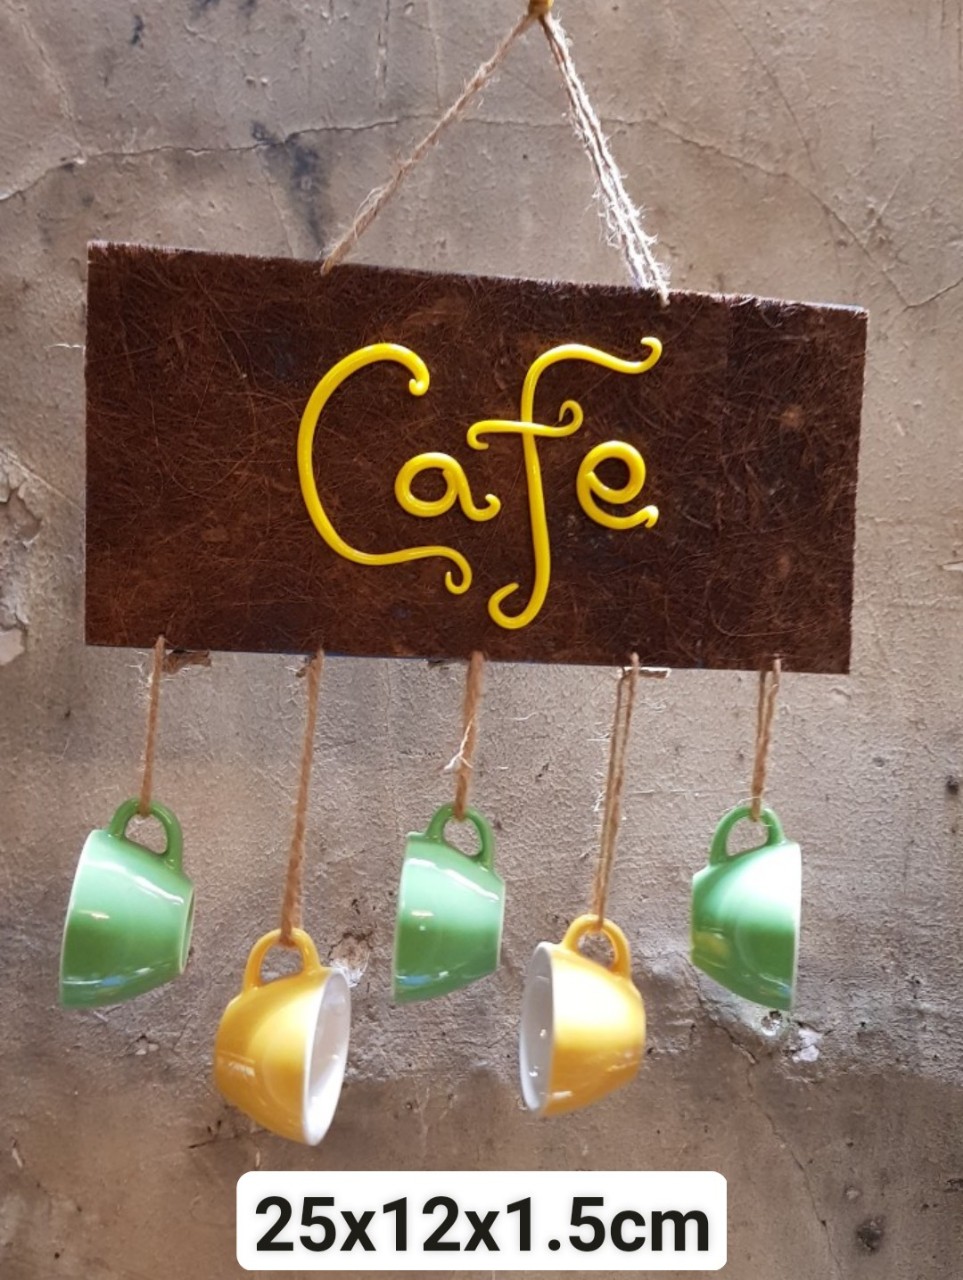 Bảng chuông Cafe, bảng trang trí, bảng gỗ handmade độc đáo, phụ kiện trang trí, decor quán cafe. Giao từ  HCM